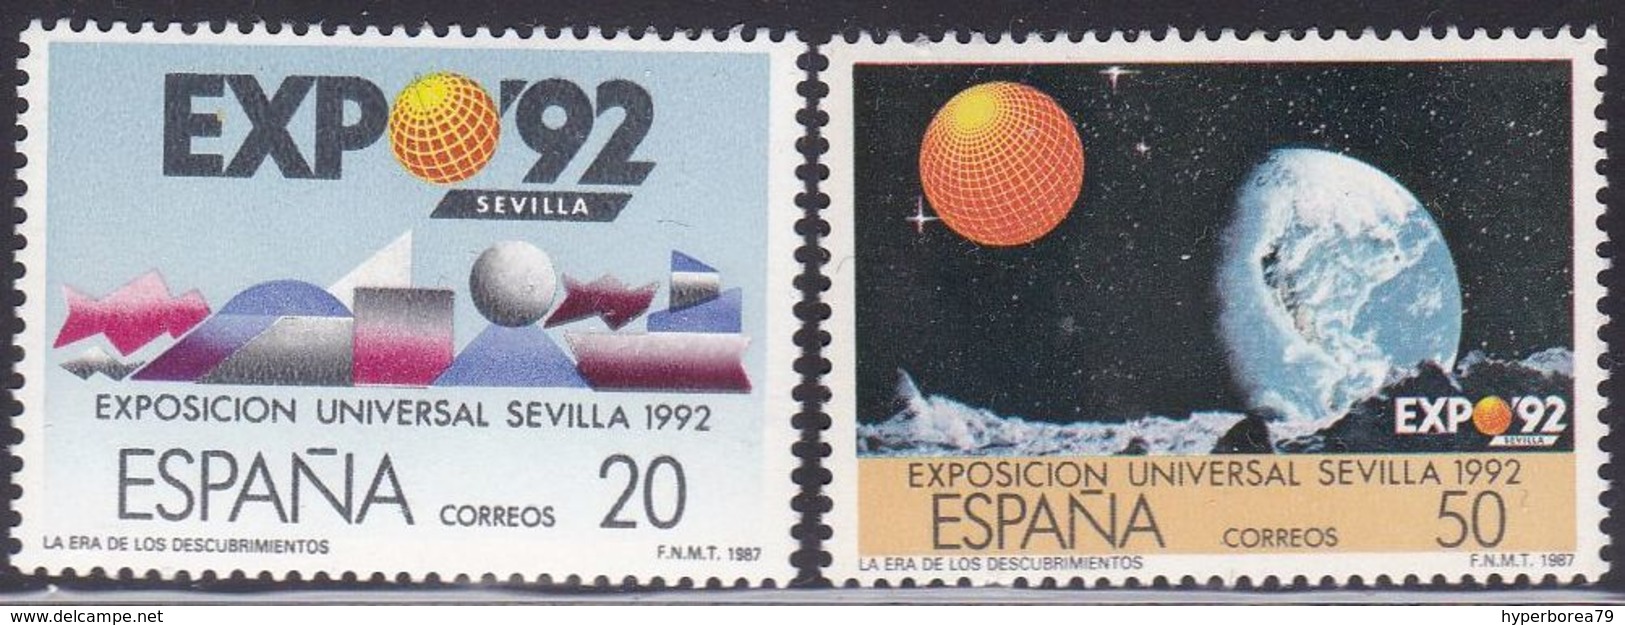 Spain 2814/15 - EXPO 92 1987 - MNH - 1992 – Séville (Espagne)